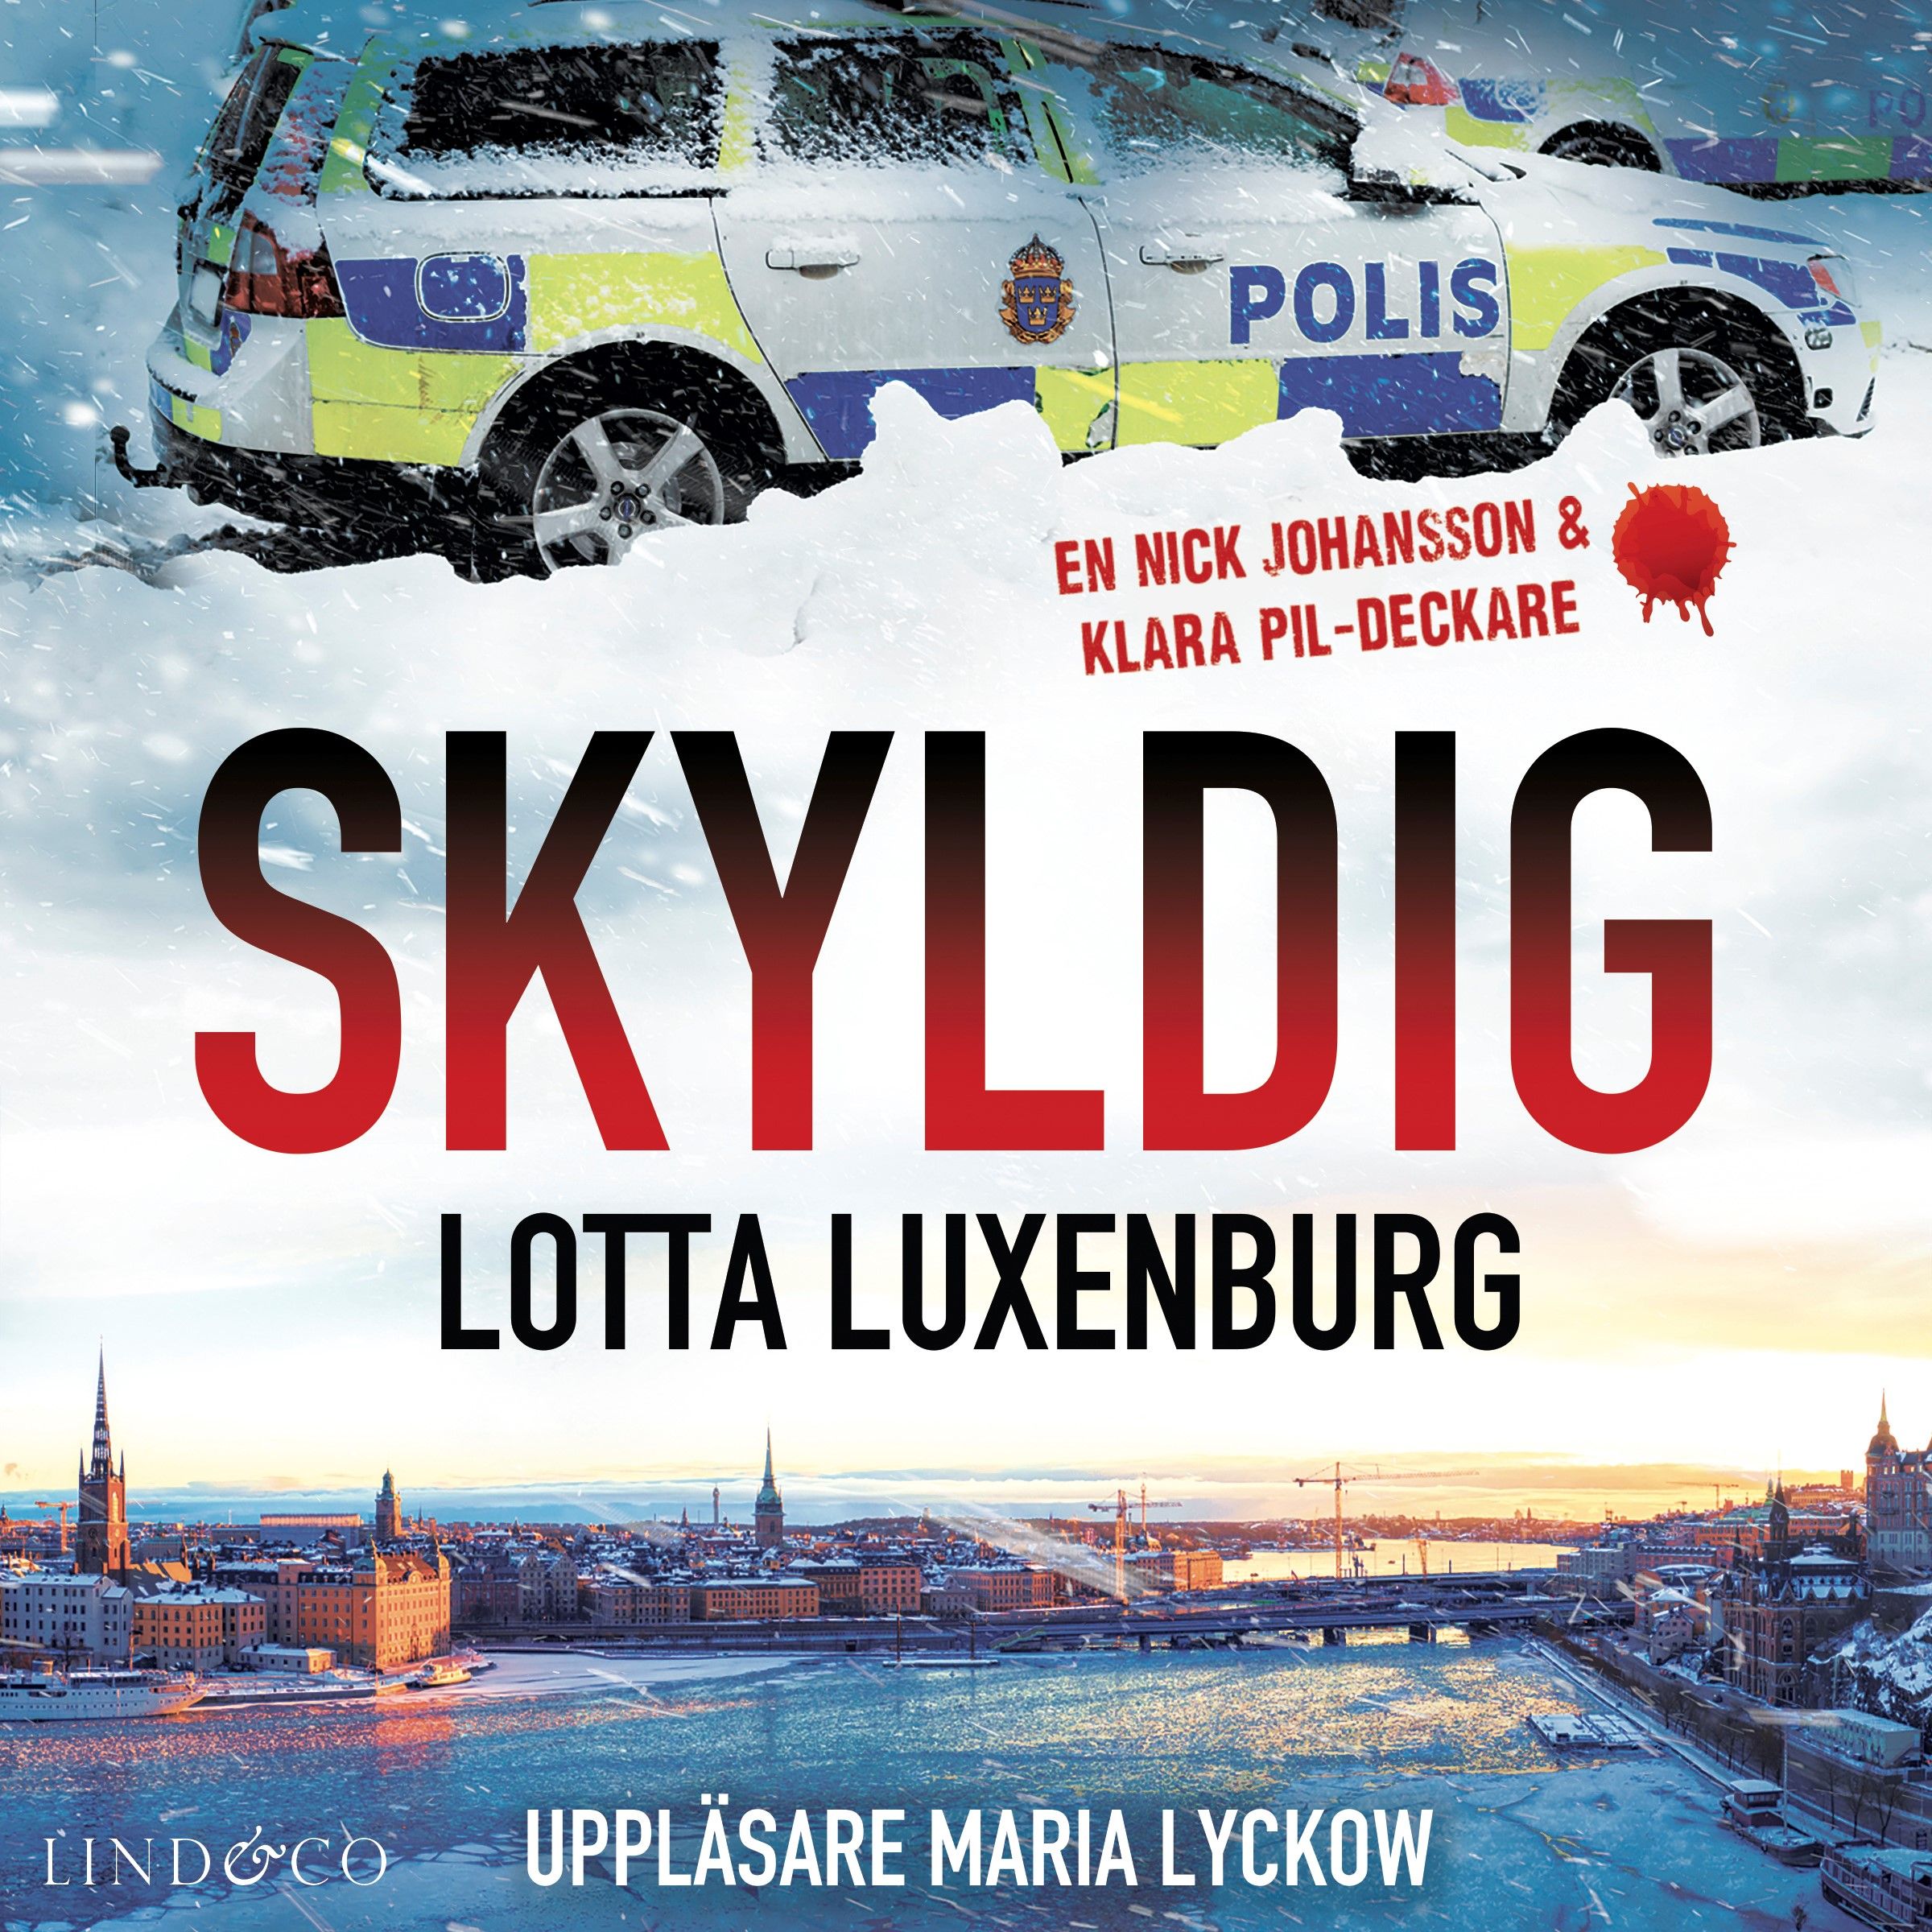 Skyldig, ljudbok av Lotta Luxenburg